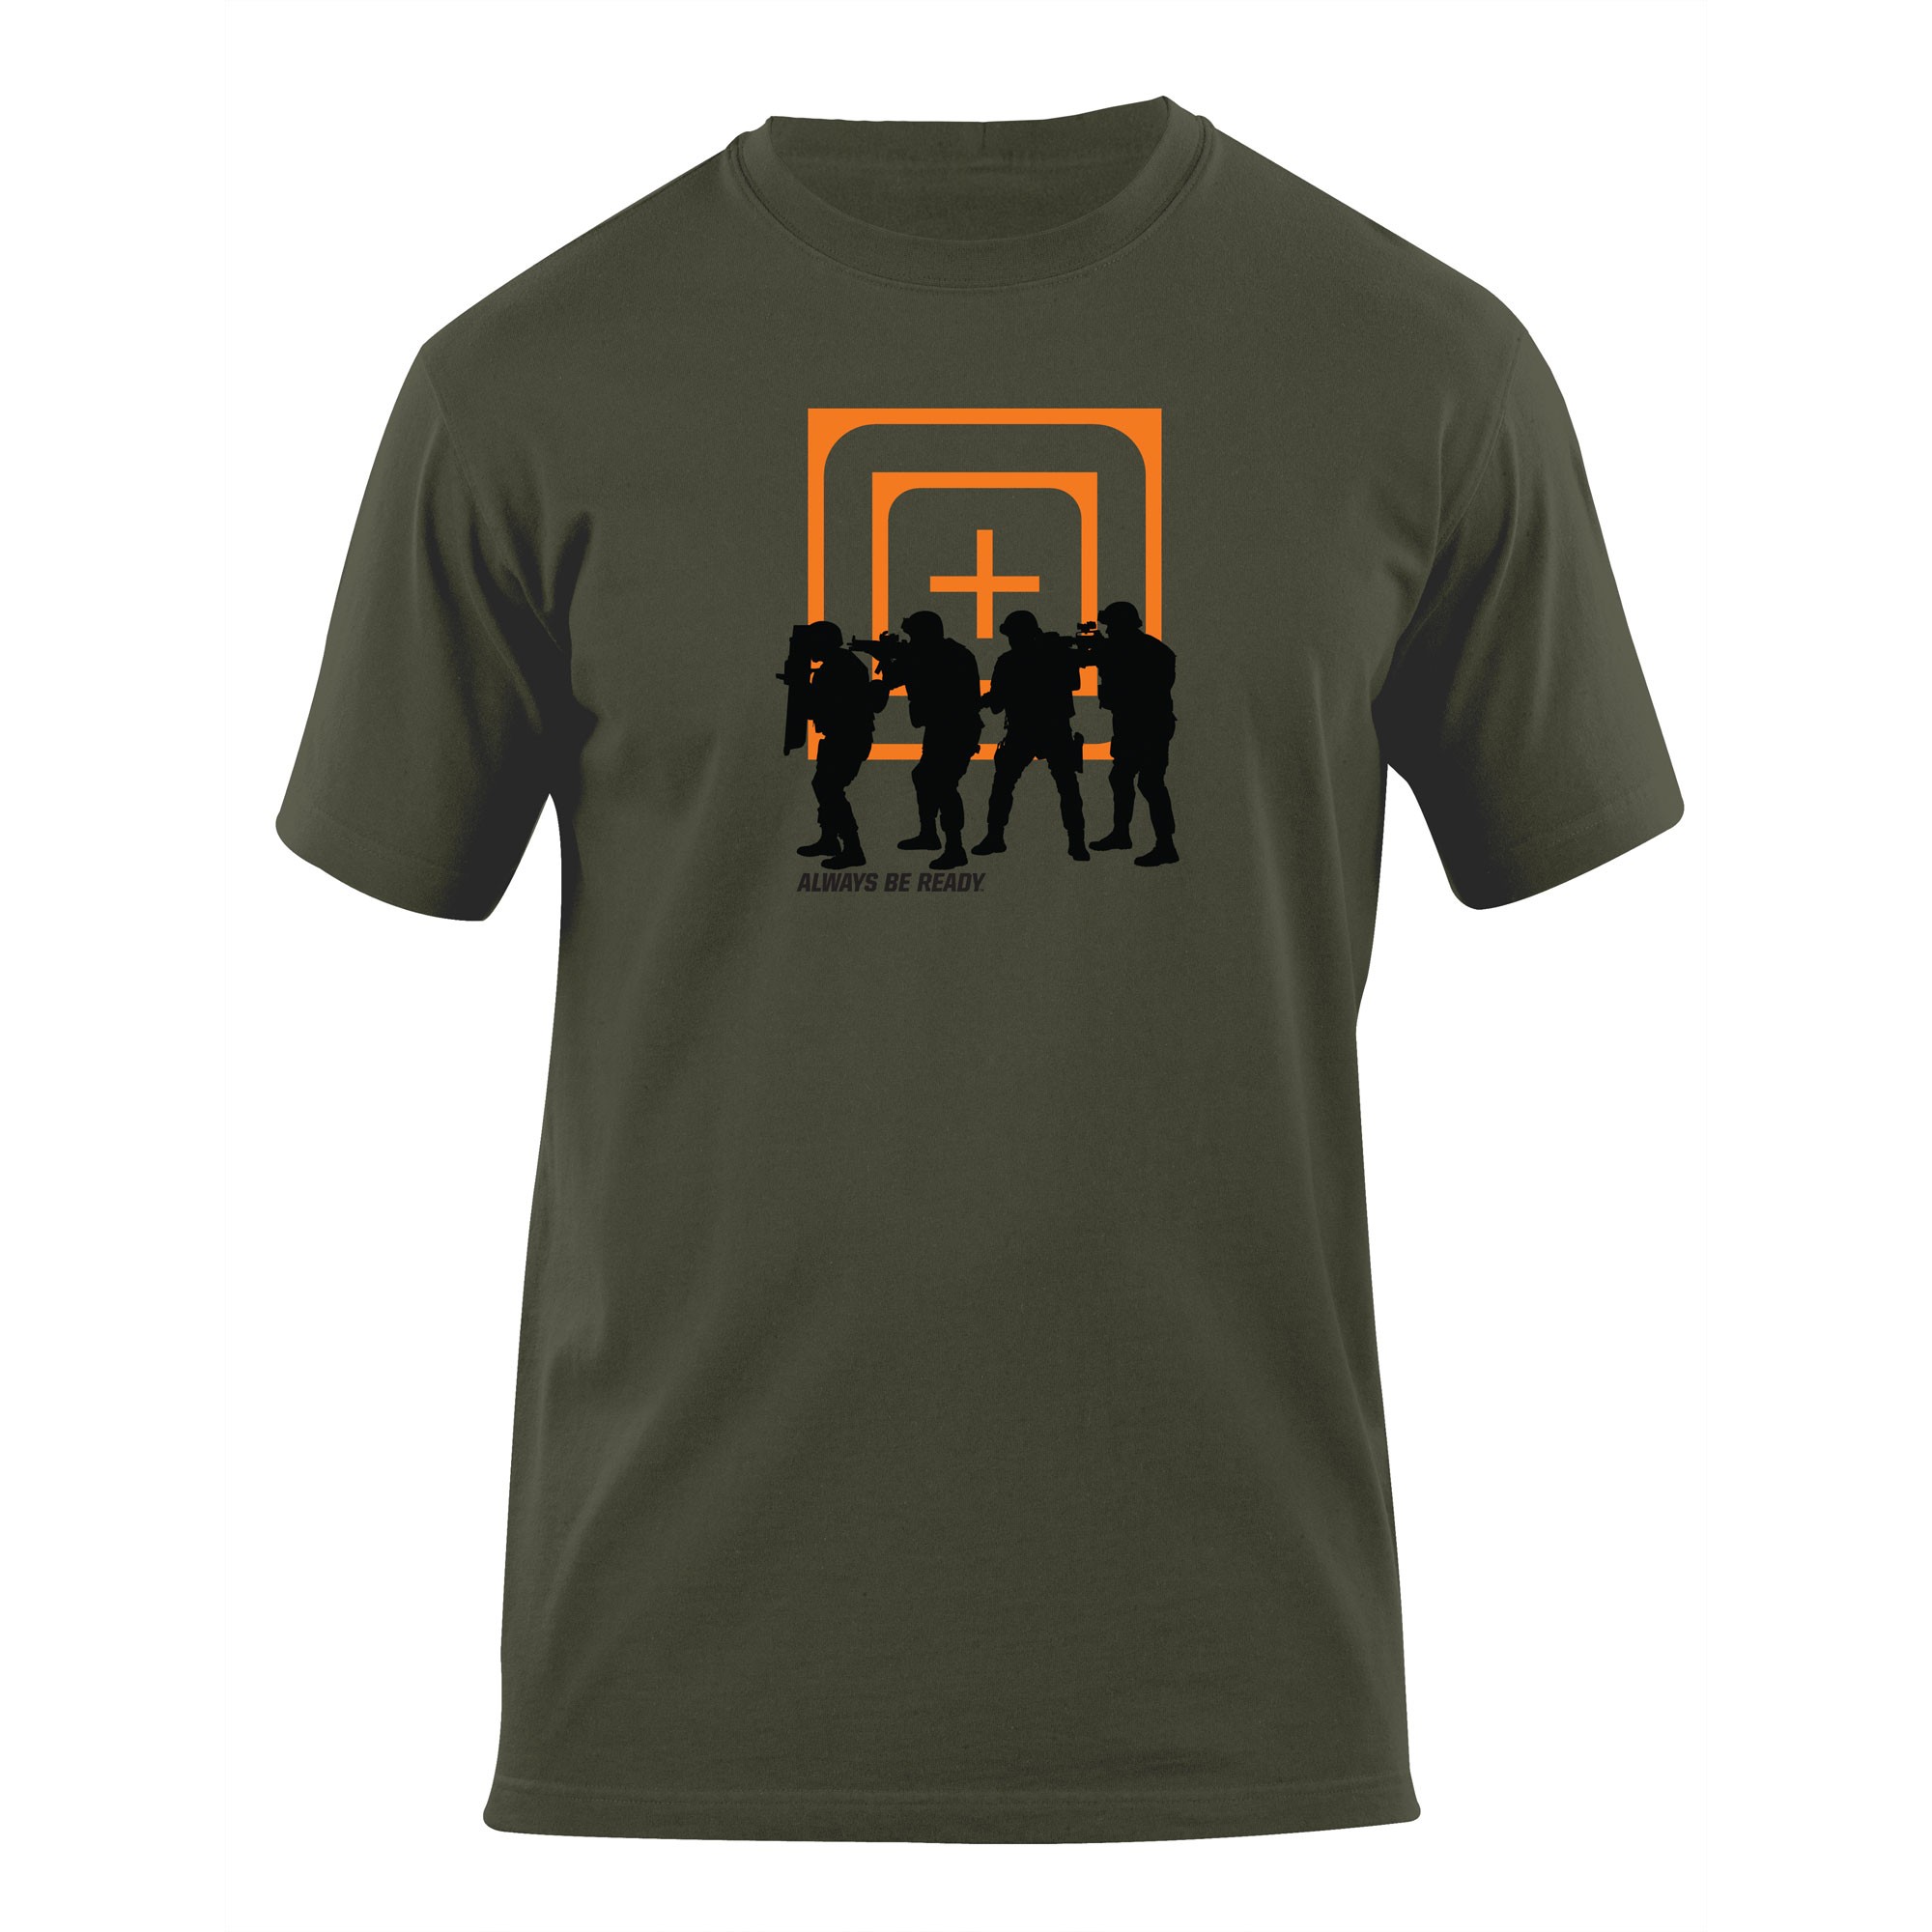 Купить футболку 5. 5.11 Tactical футболка мужская. Одежда 5.11 Тактикал. 511 Тактикал футболка.